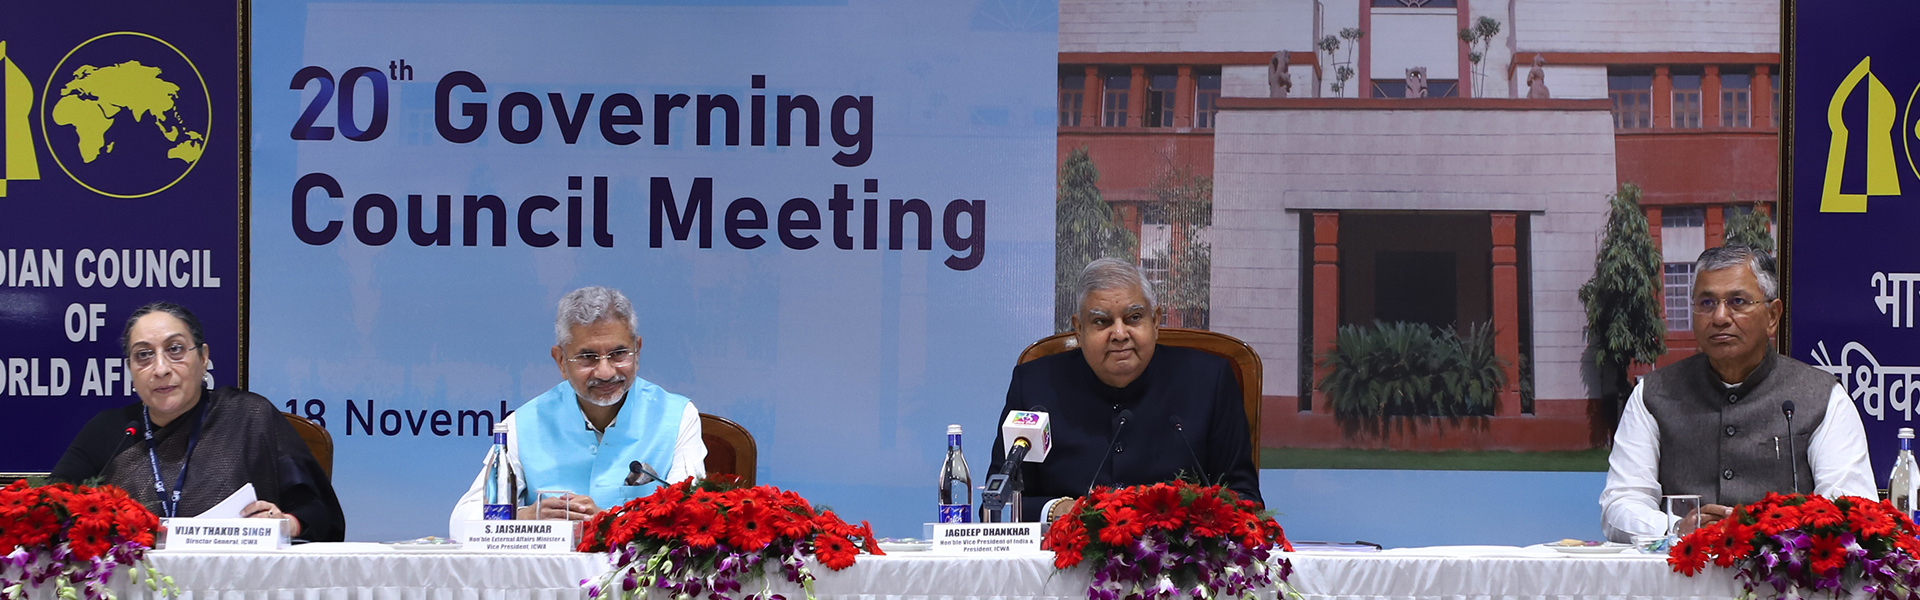 बाएं से दाएं- आईसीडब्ल्यूए की शासी परिषद् की 18 नवंबर 2022 को हुई 20वीं बैठक में आईसीडब्ल्यूए की महानिदेशक विजय ठाकुर सिंह, डॉ. एस जयशंकर, विदेश मंत्री, भारत सरकार और आईसीडब्ल्यूए के उपाध्यक्ष, श्री जगदीप धनखड़, माननीय उप-राष्ट्रपति, भारत सरकार और आईसीडब्ल्यूए के अध्यक्ष,  श्री पी. पी. चौधरी, विदेश मंत्रालय की स्थायी समिति के माननीय अध्यक्ष और आईसीडब्ल्यूए के उपाध्यक्ष।